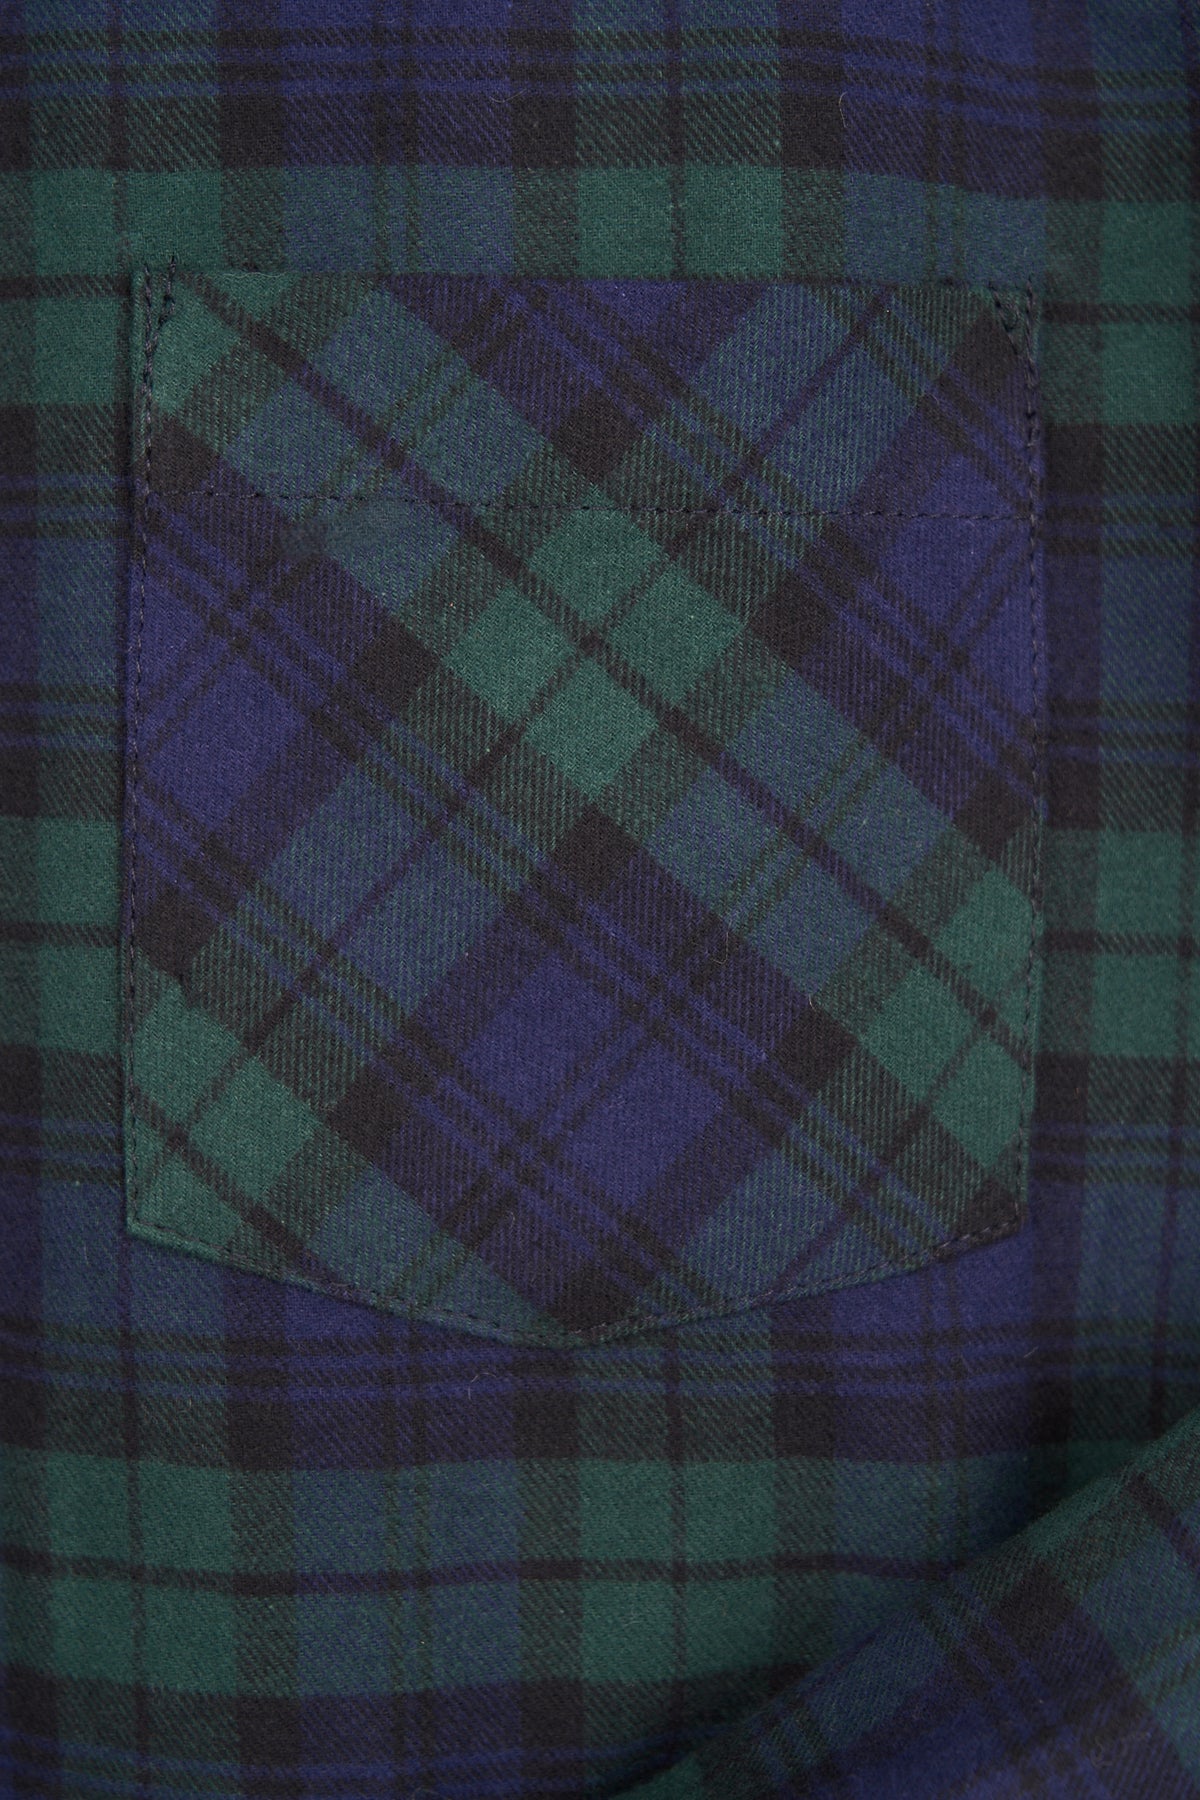 Cotton Flannel Button Down - BLACKWATCH PLAID